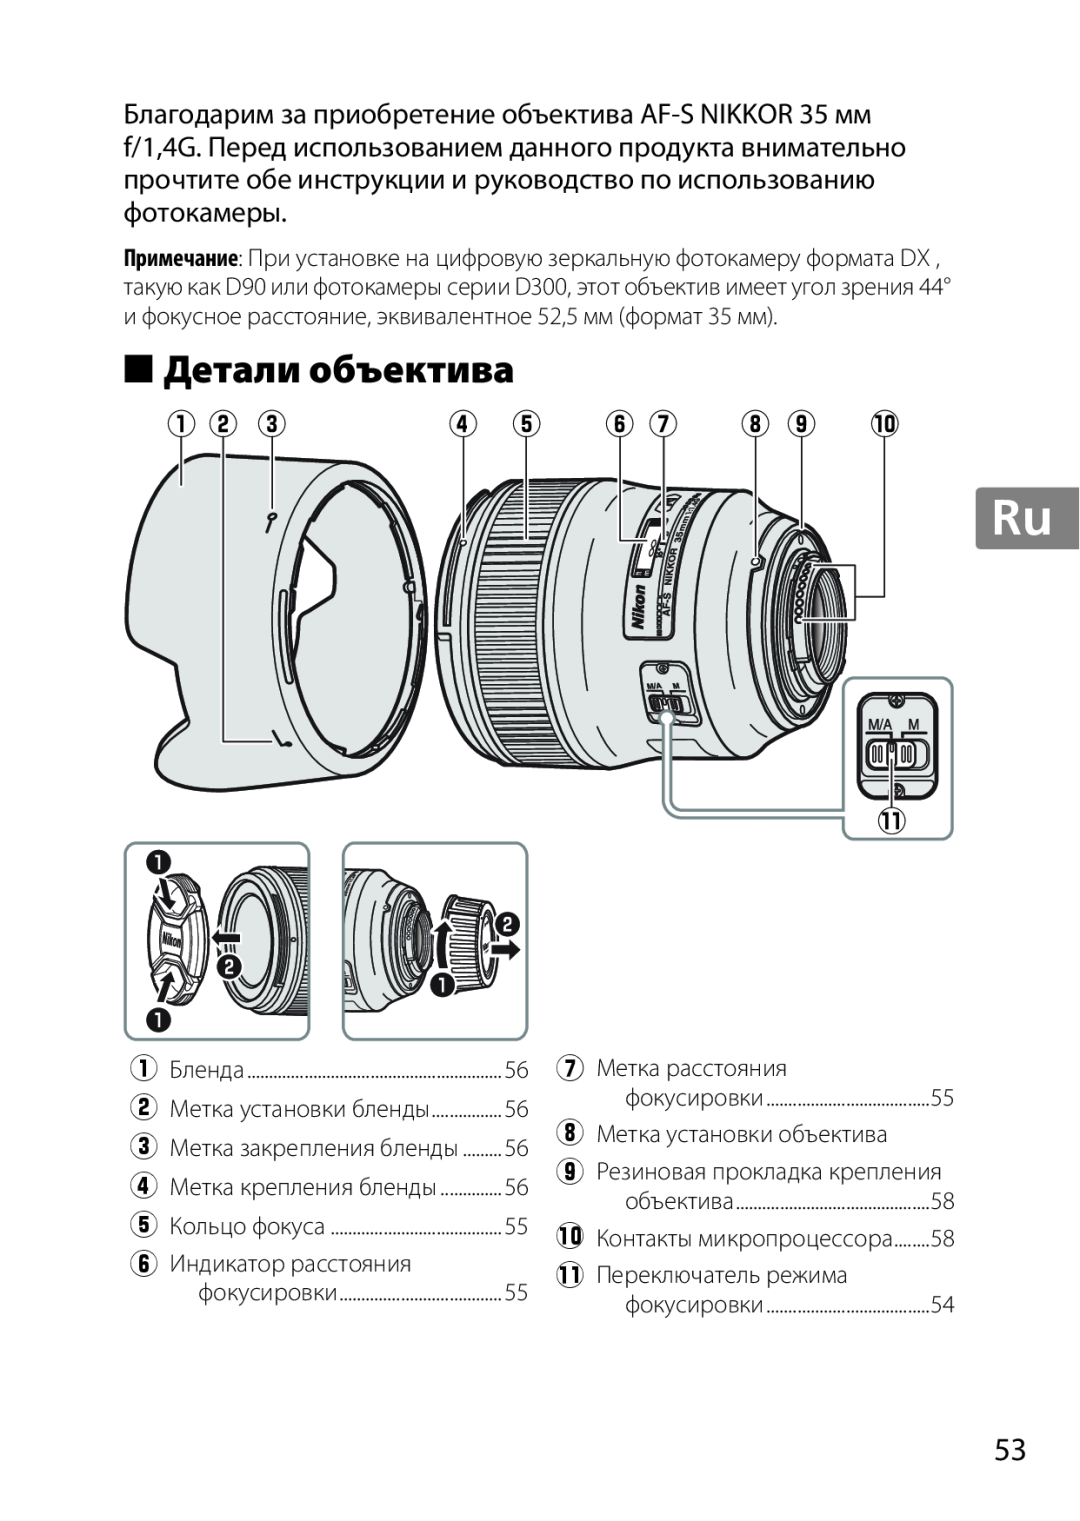 Nikon 35mmf14G, AF-S, 35mm f/1.4G, 2198 user manual Детали объектива, q w e, y u i o !0 